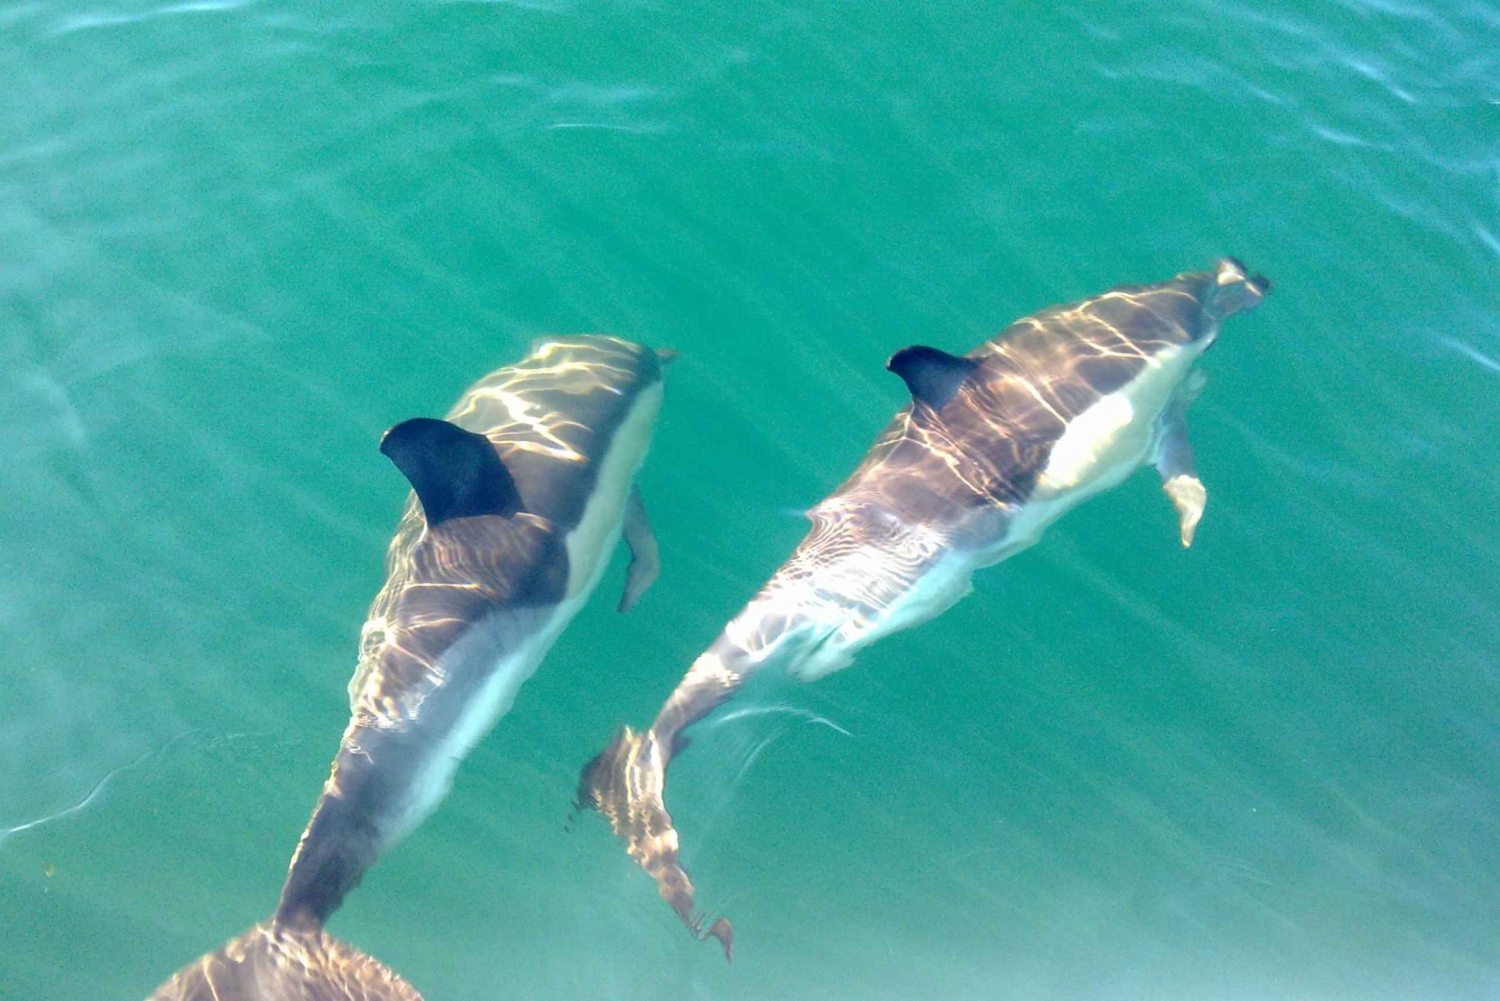 Fuzeta: Wycieczka z obserwacją delfinów